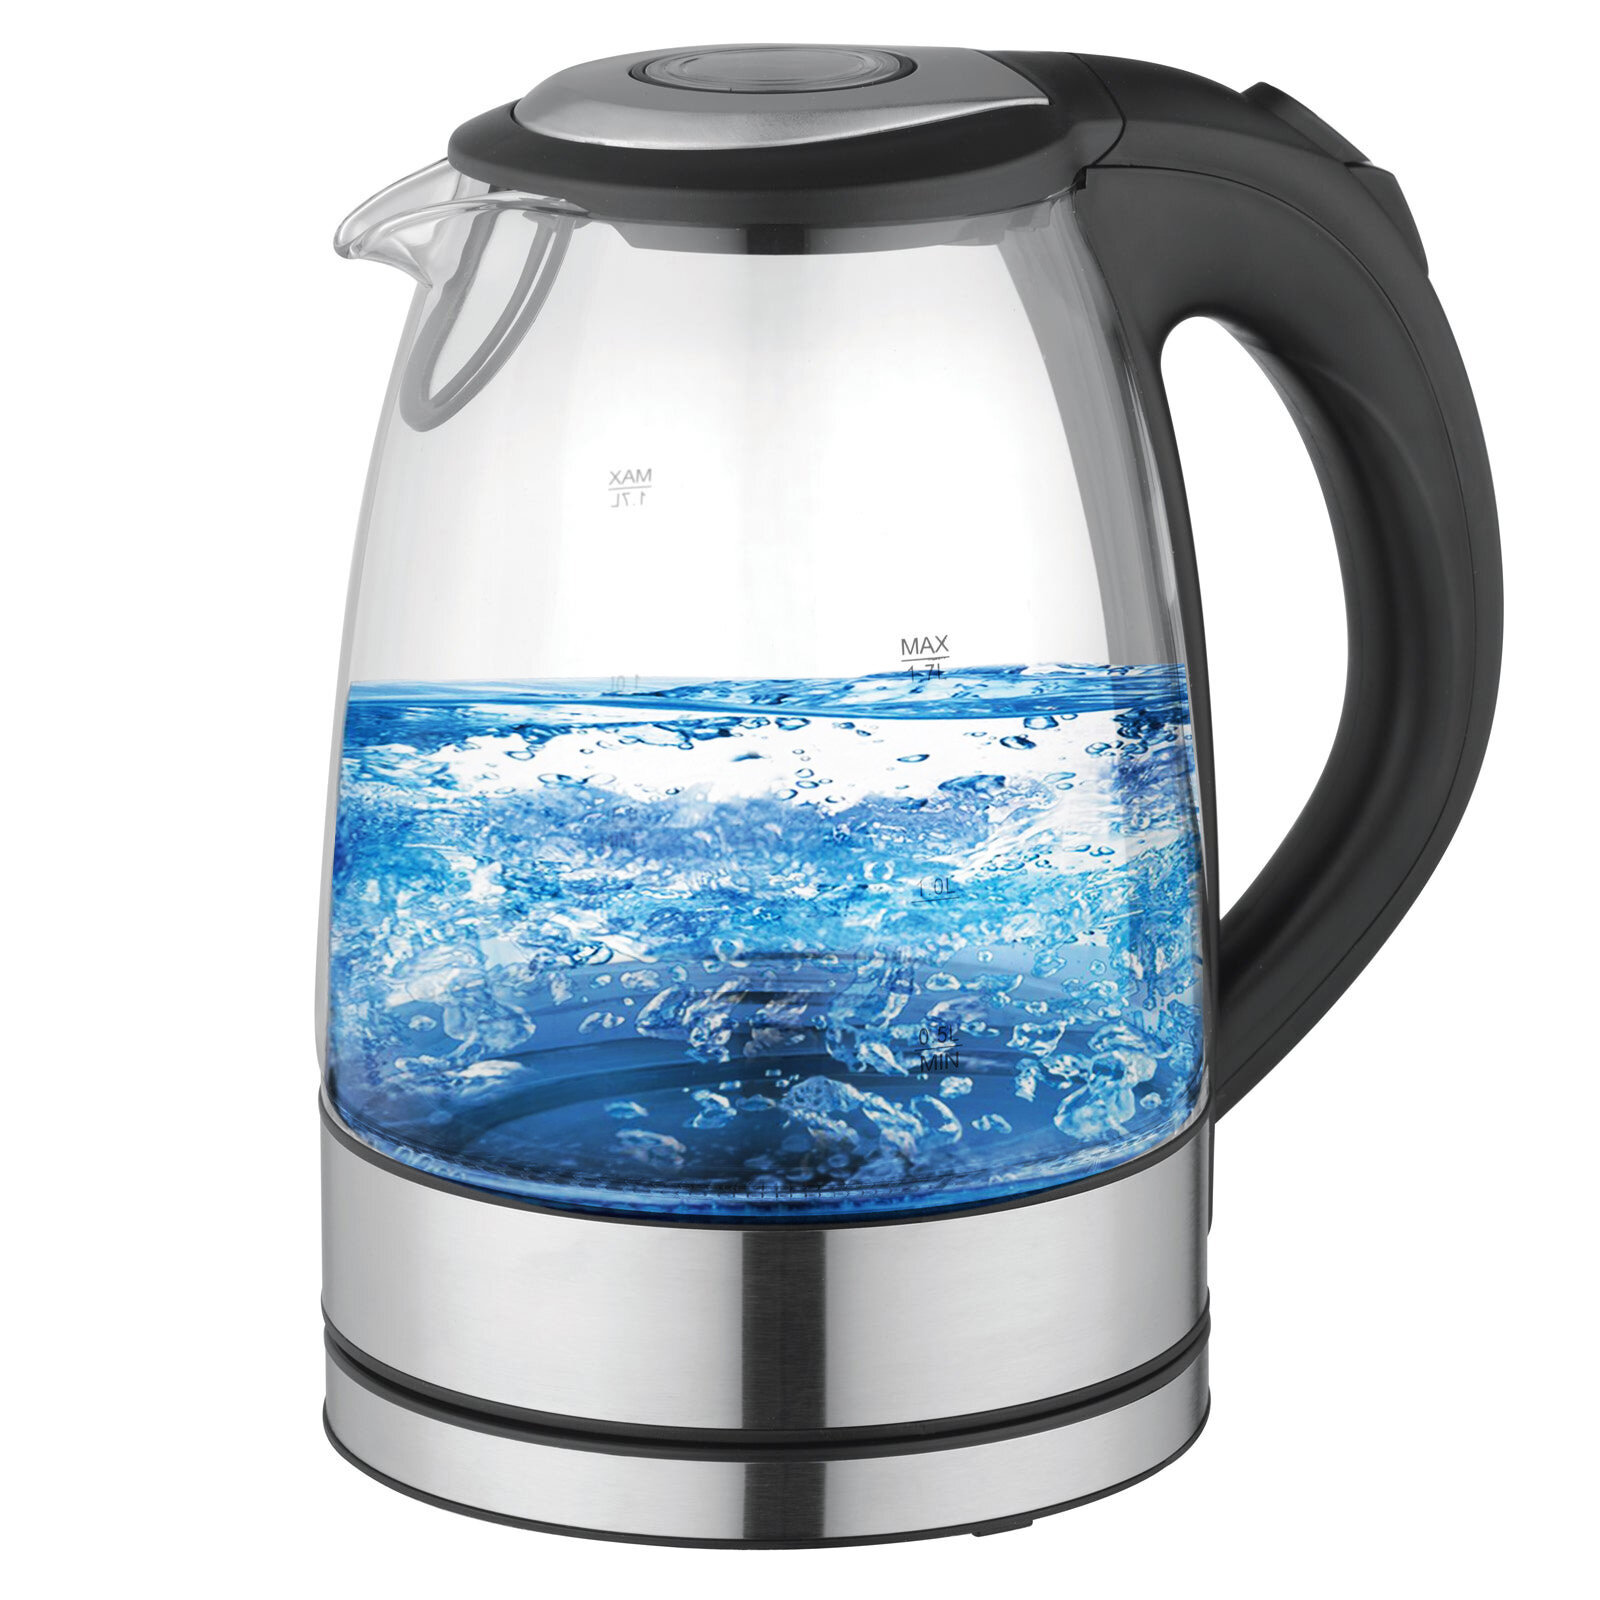 https://assets.wfcdn.com/im/84934577/compr-r85/1263/126352170/better-chef-electric-tea-kettle.jpg